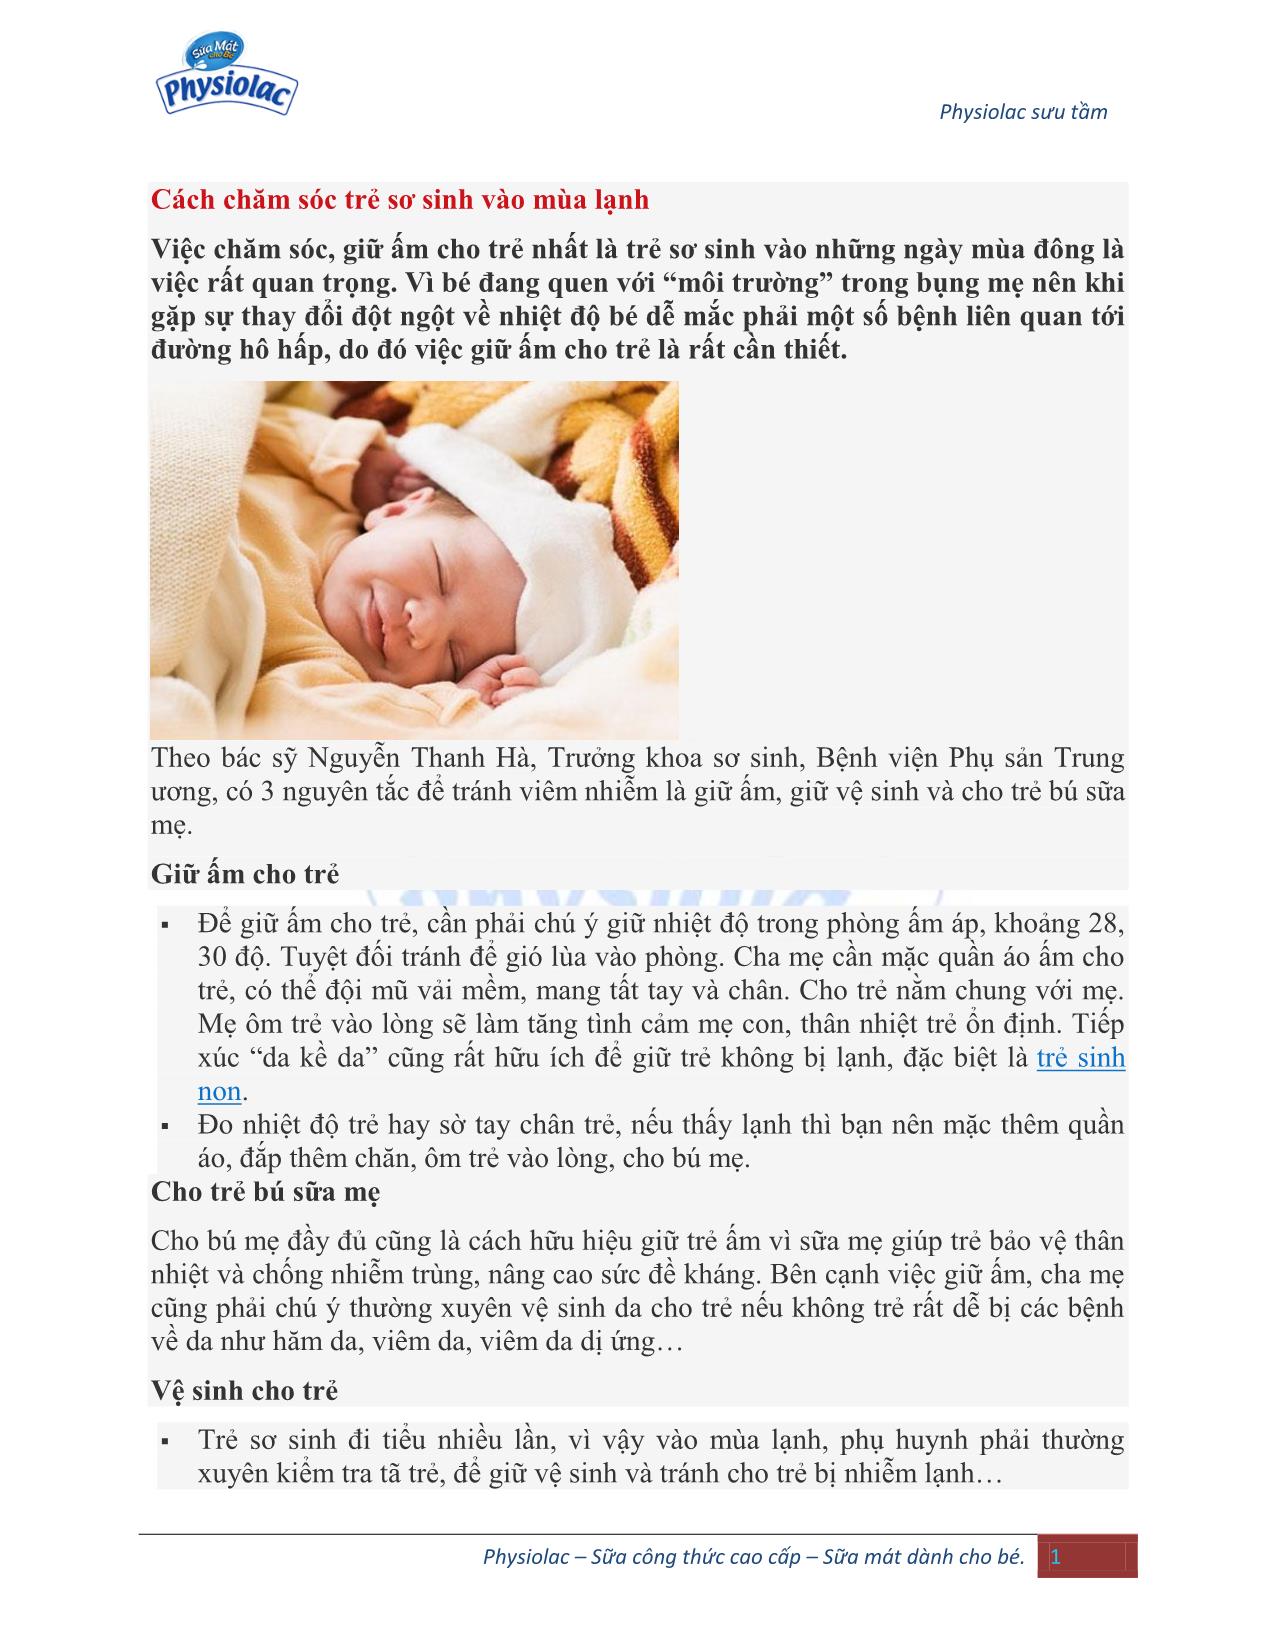 Cách chăm sóc trẻ sơ sinh vào mùa lạnh trang 1